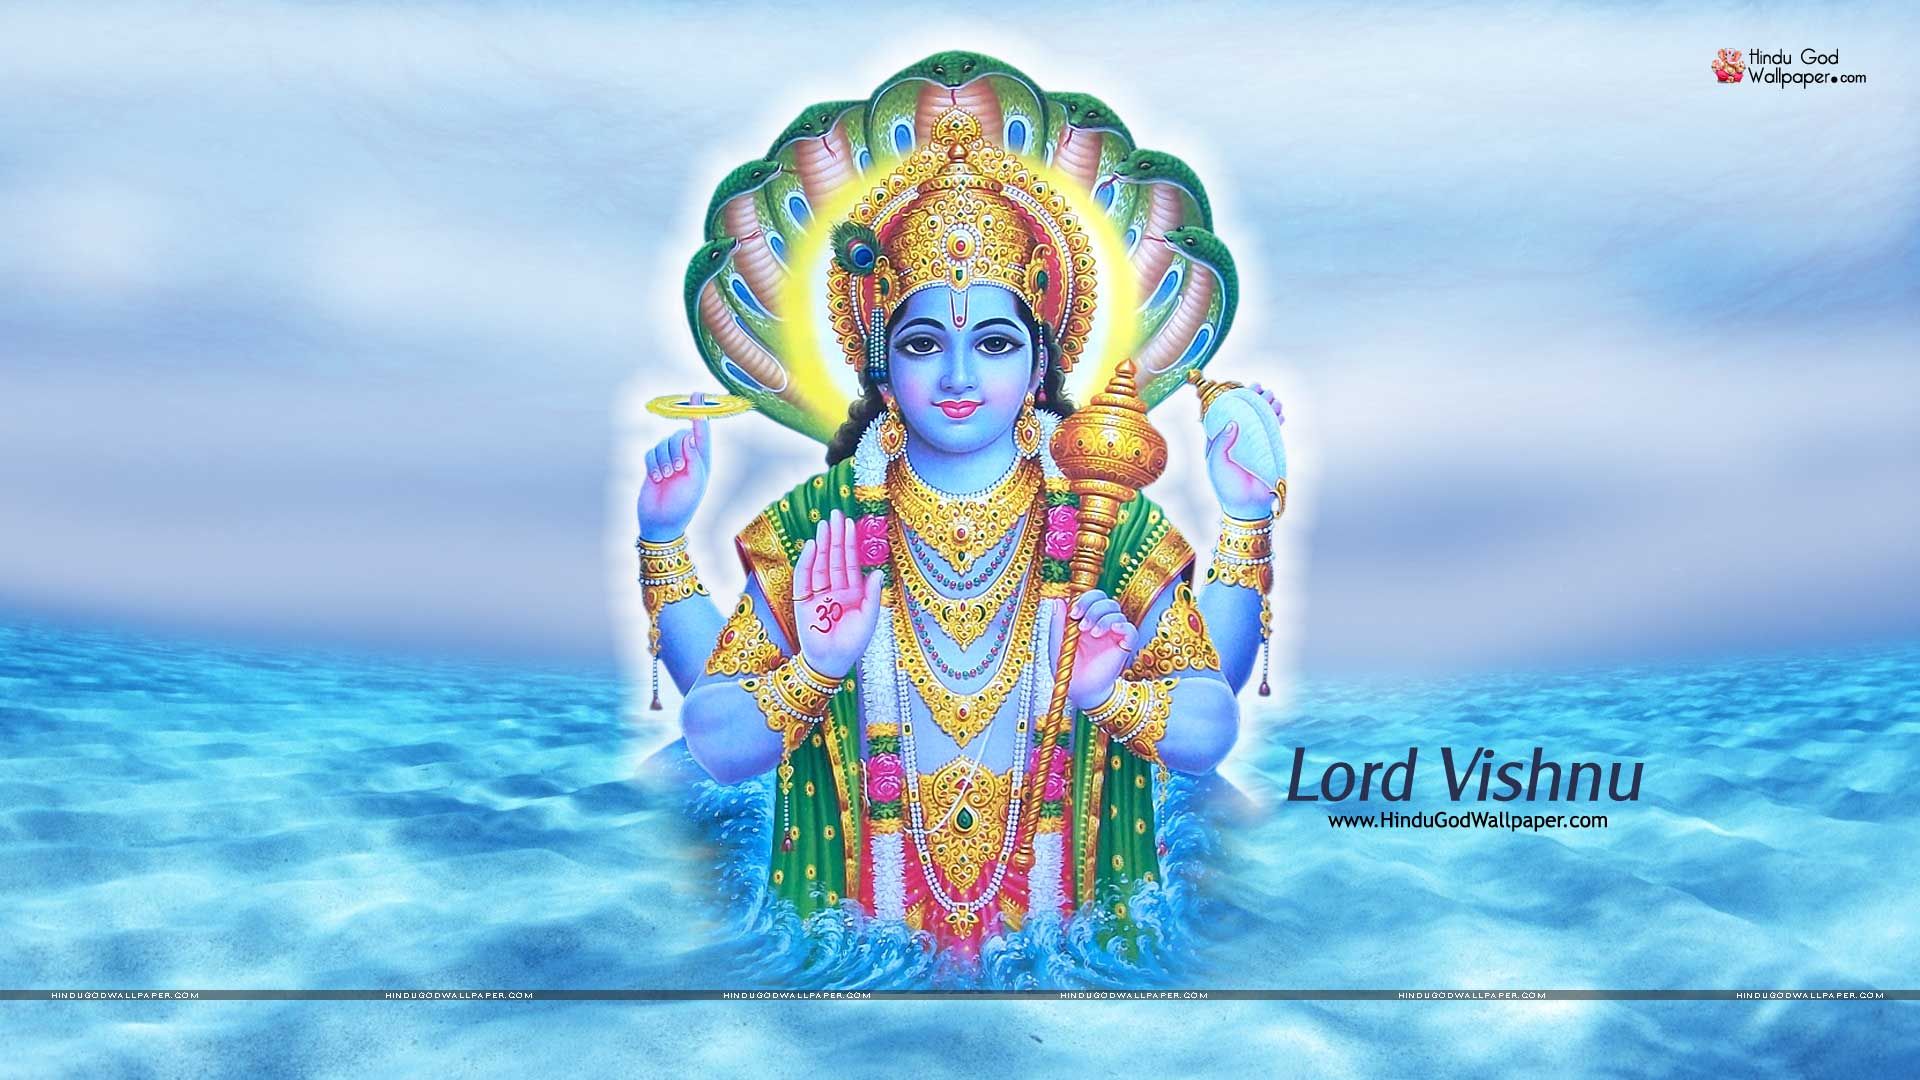 Full Hd Lord Vishnu - 1920x1080 Wallpaper 